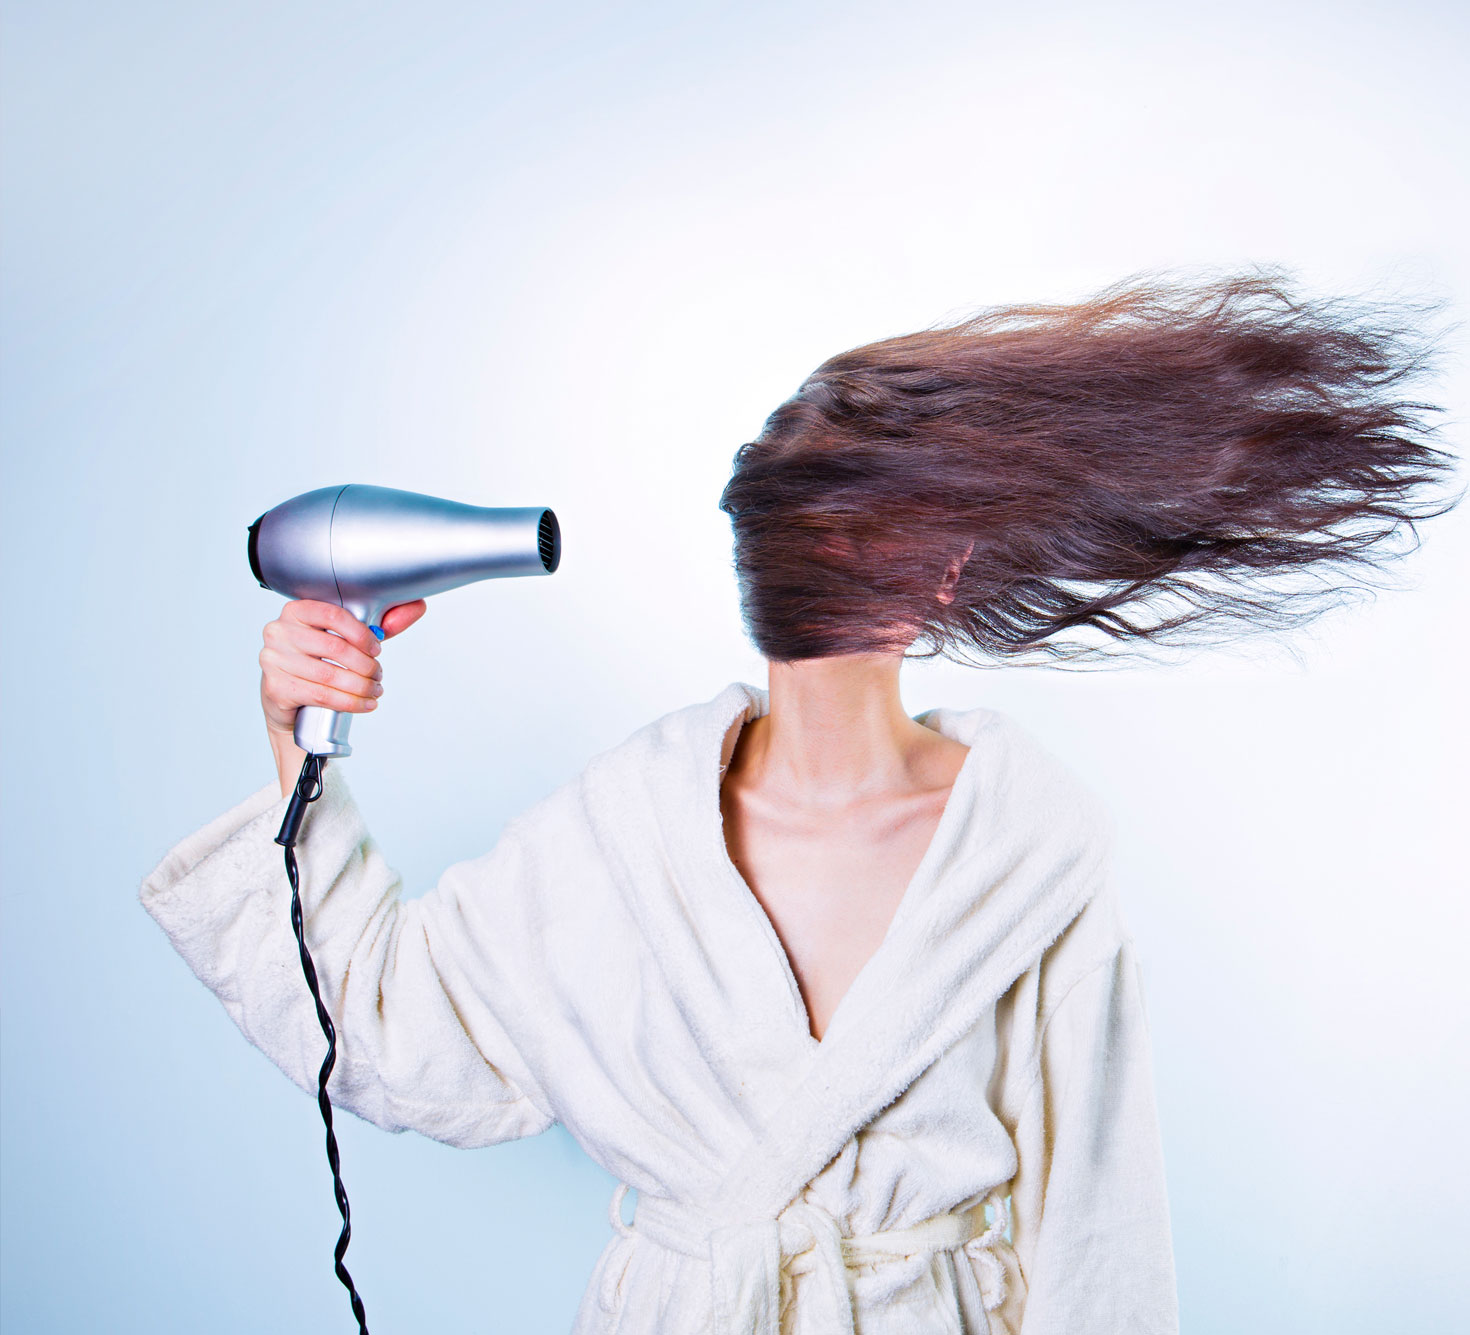 Как правильно сушить волосы феном вниз головой